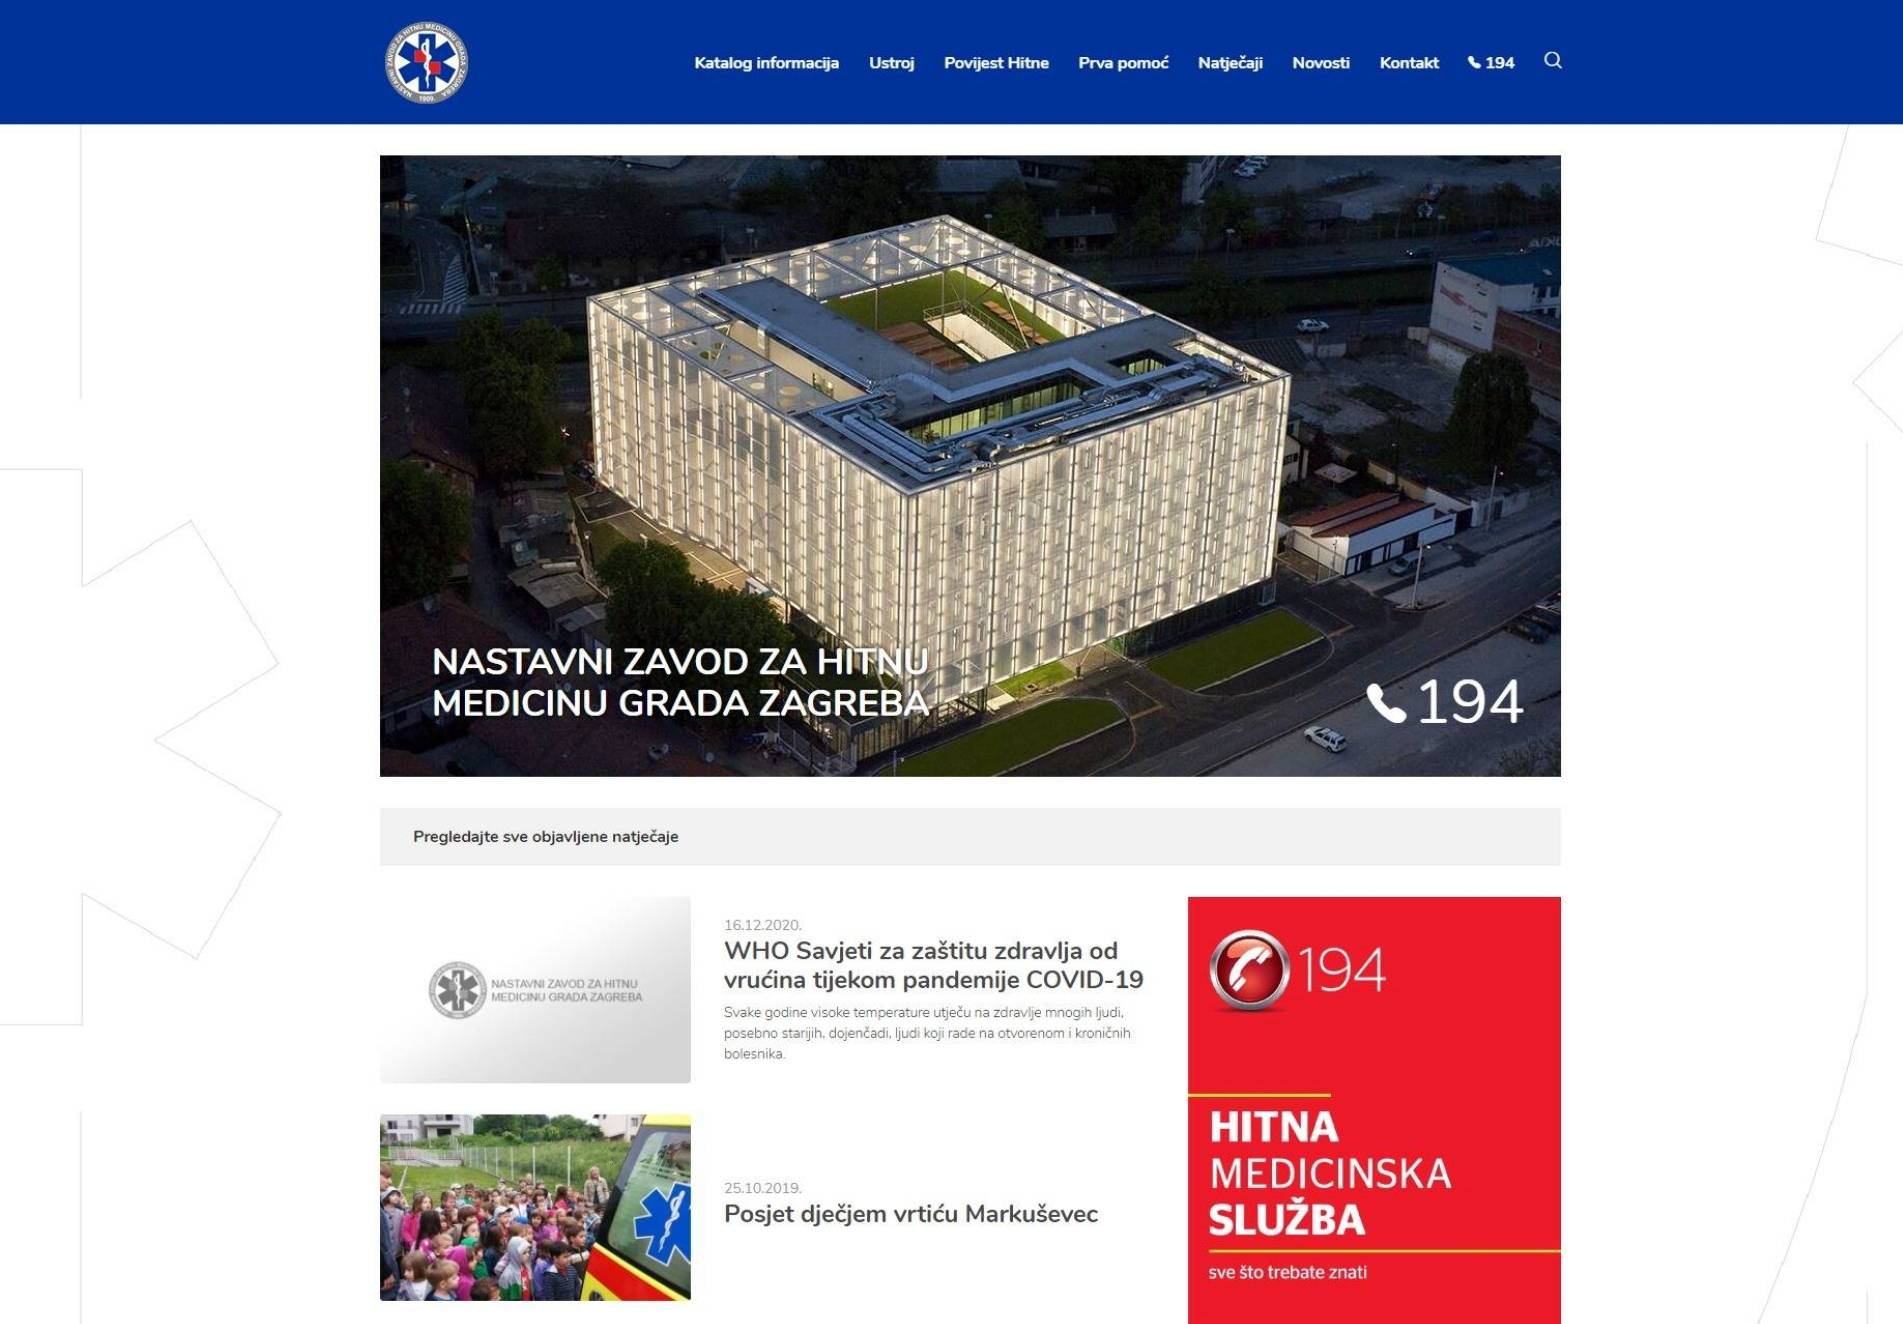 Das Institut für Notfallmedizin der Stadt Zagreb